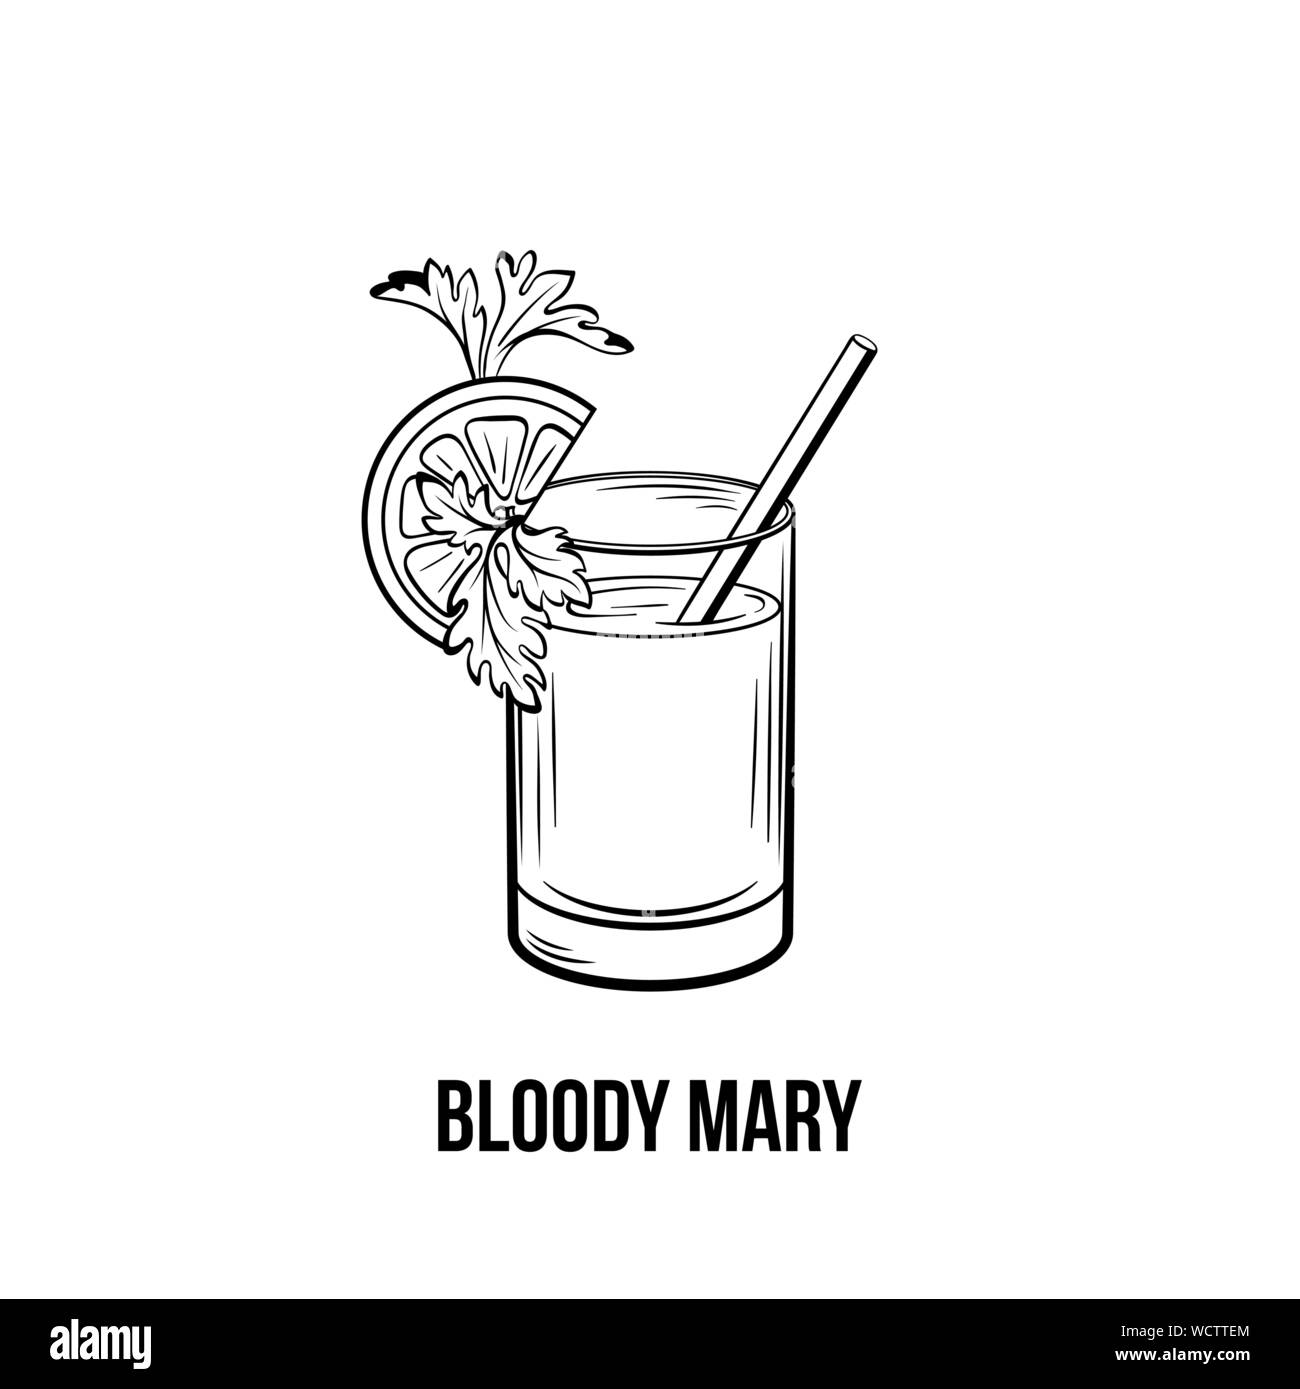 Bloody Mary Vector schwarz und weiß Abbildung. Starke Tomaten drink Shot mit Sellerie und Zitrone auf Glas. Alkoholische Getränke mit Stroh Tinte Zeichnung. Menü im Restaurant, Poster design Element Stock Vektor